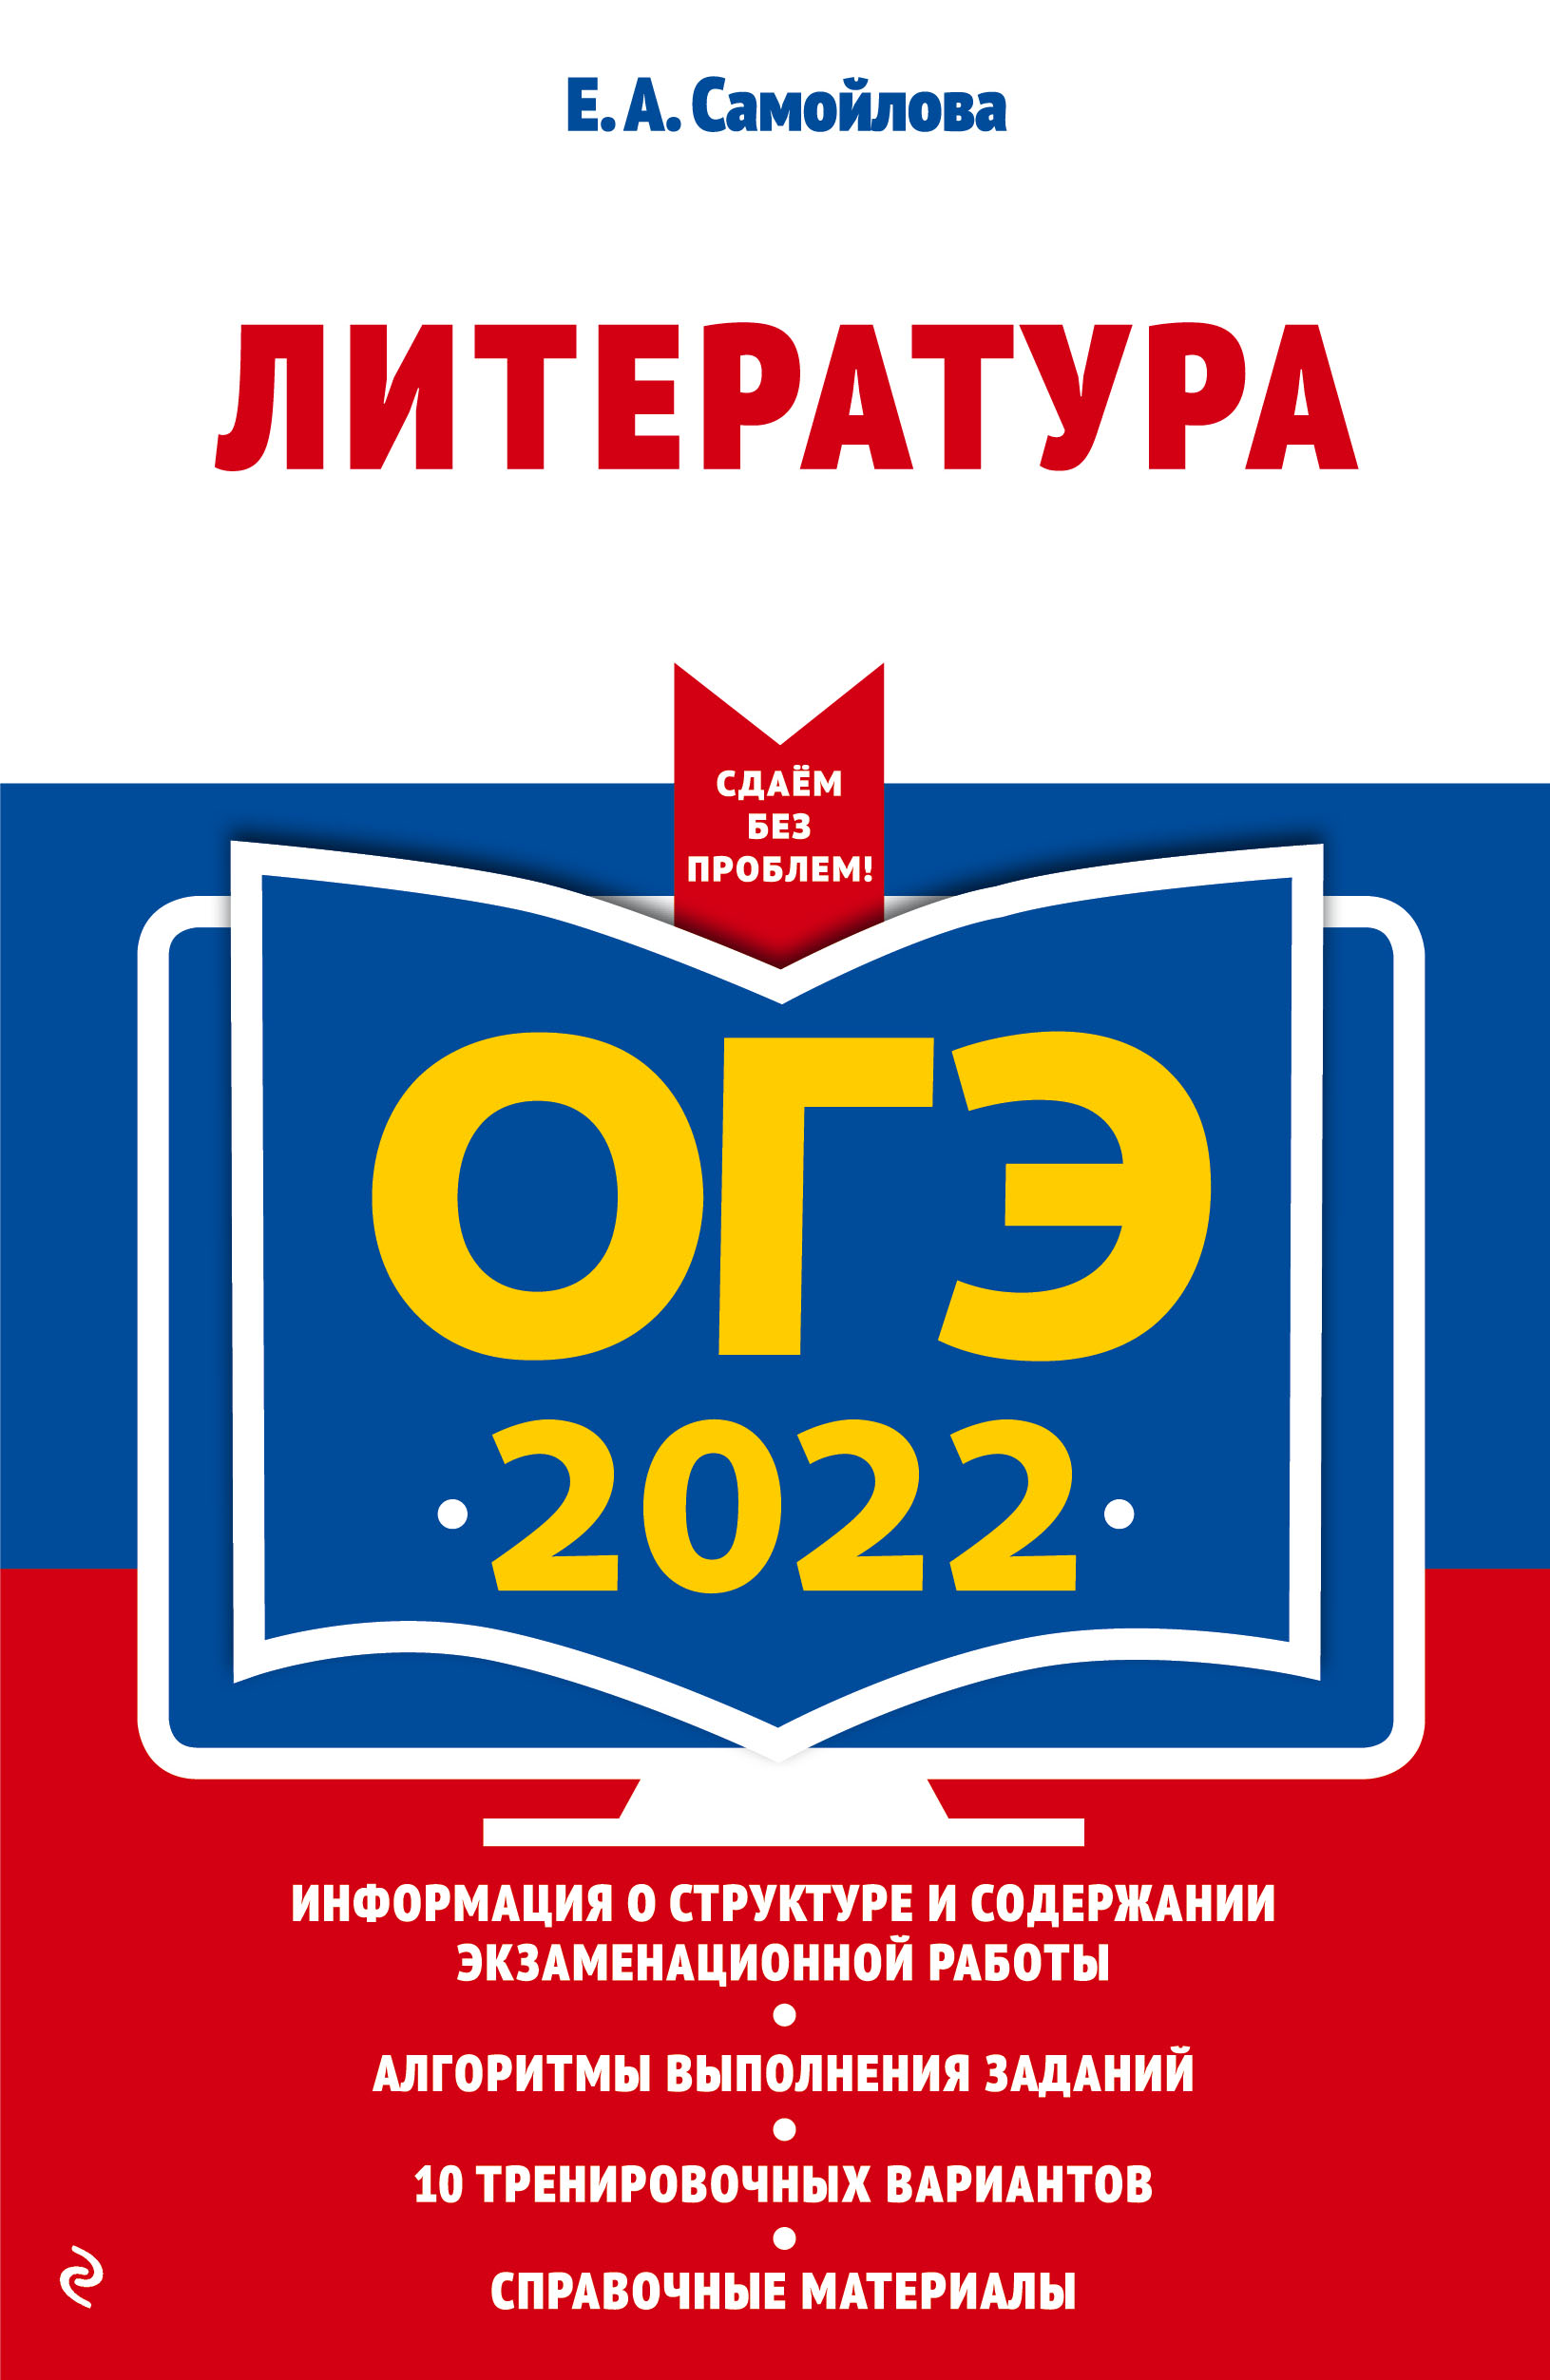  .. -2022.  